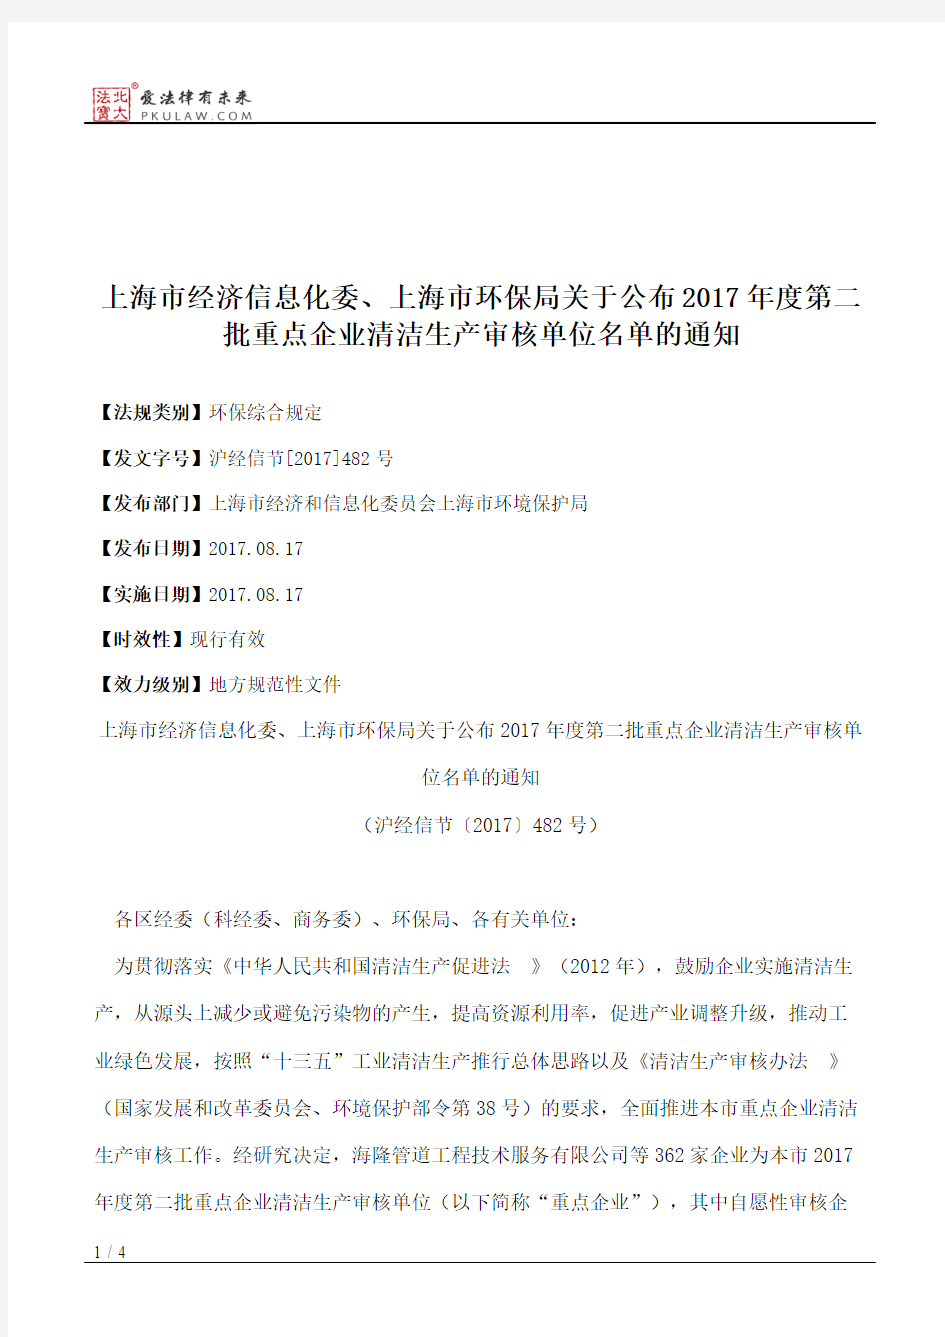 上海市经济信息化委、上海市环保局关于公布2017年度第二批重点企